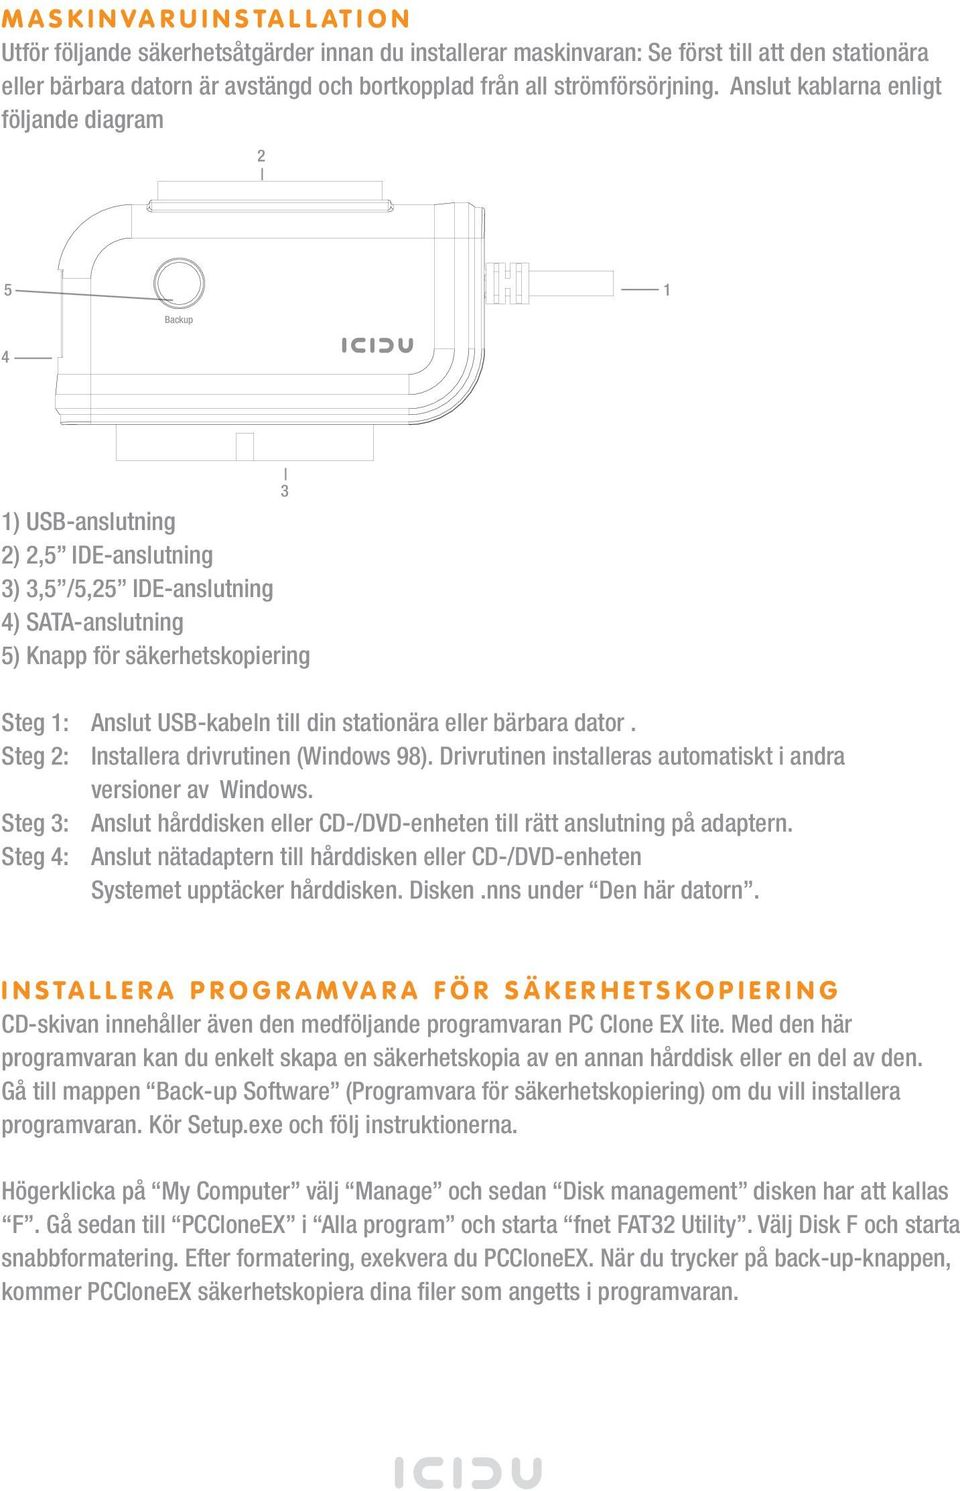 Anslut kablarna enligt följande diagram 2 5 1 Backup 4 1) USB-anslutning 2) 2,5 IDE-anslutning 3) 3,5 /5,25 IDE-anslutning 4) SATA-anslutning 5) Knapp för säkerhetskopiering 3 Steg 1: Anslut